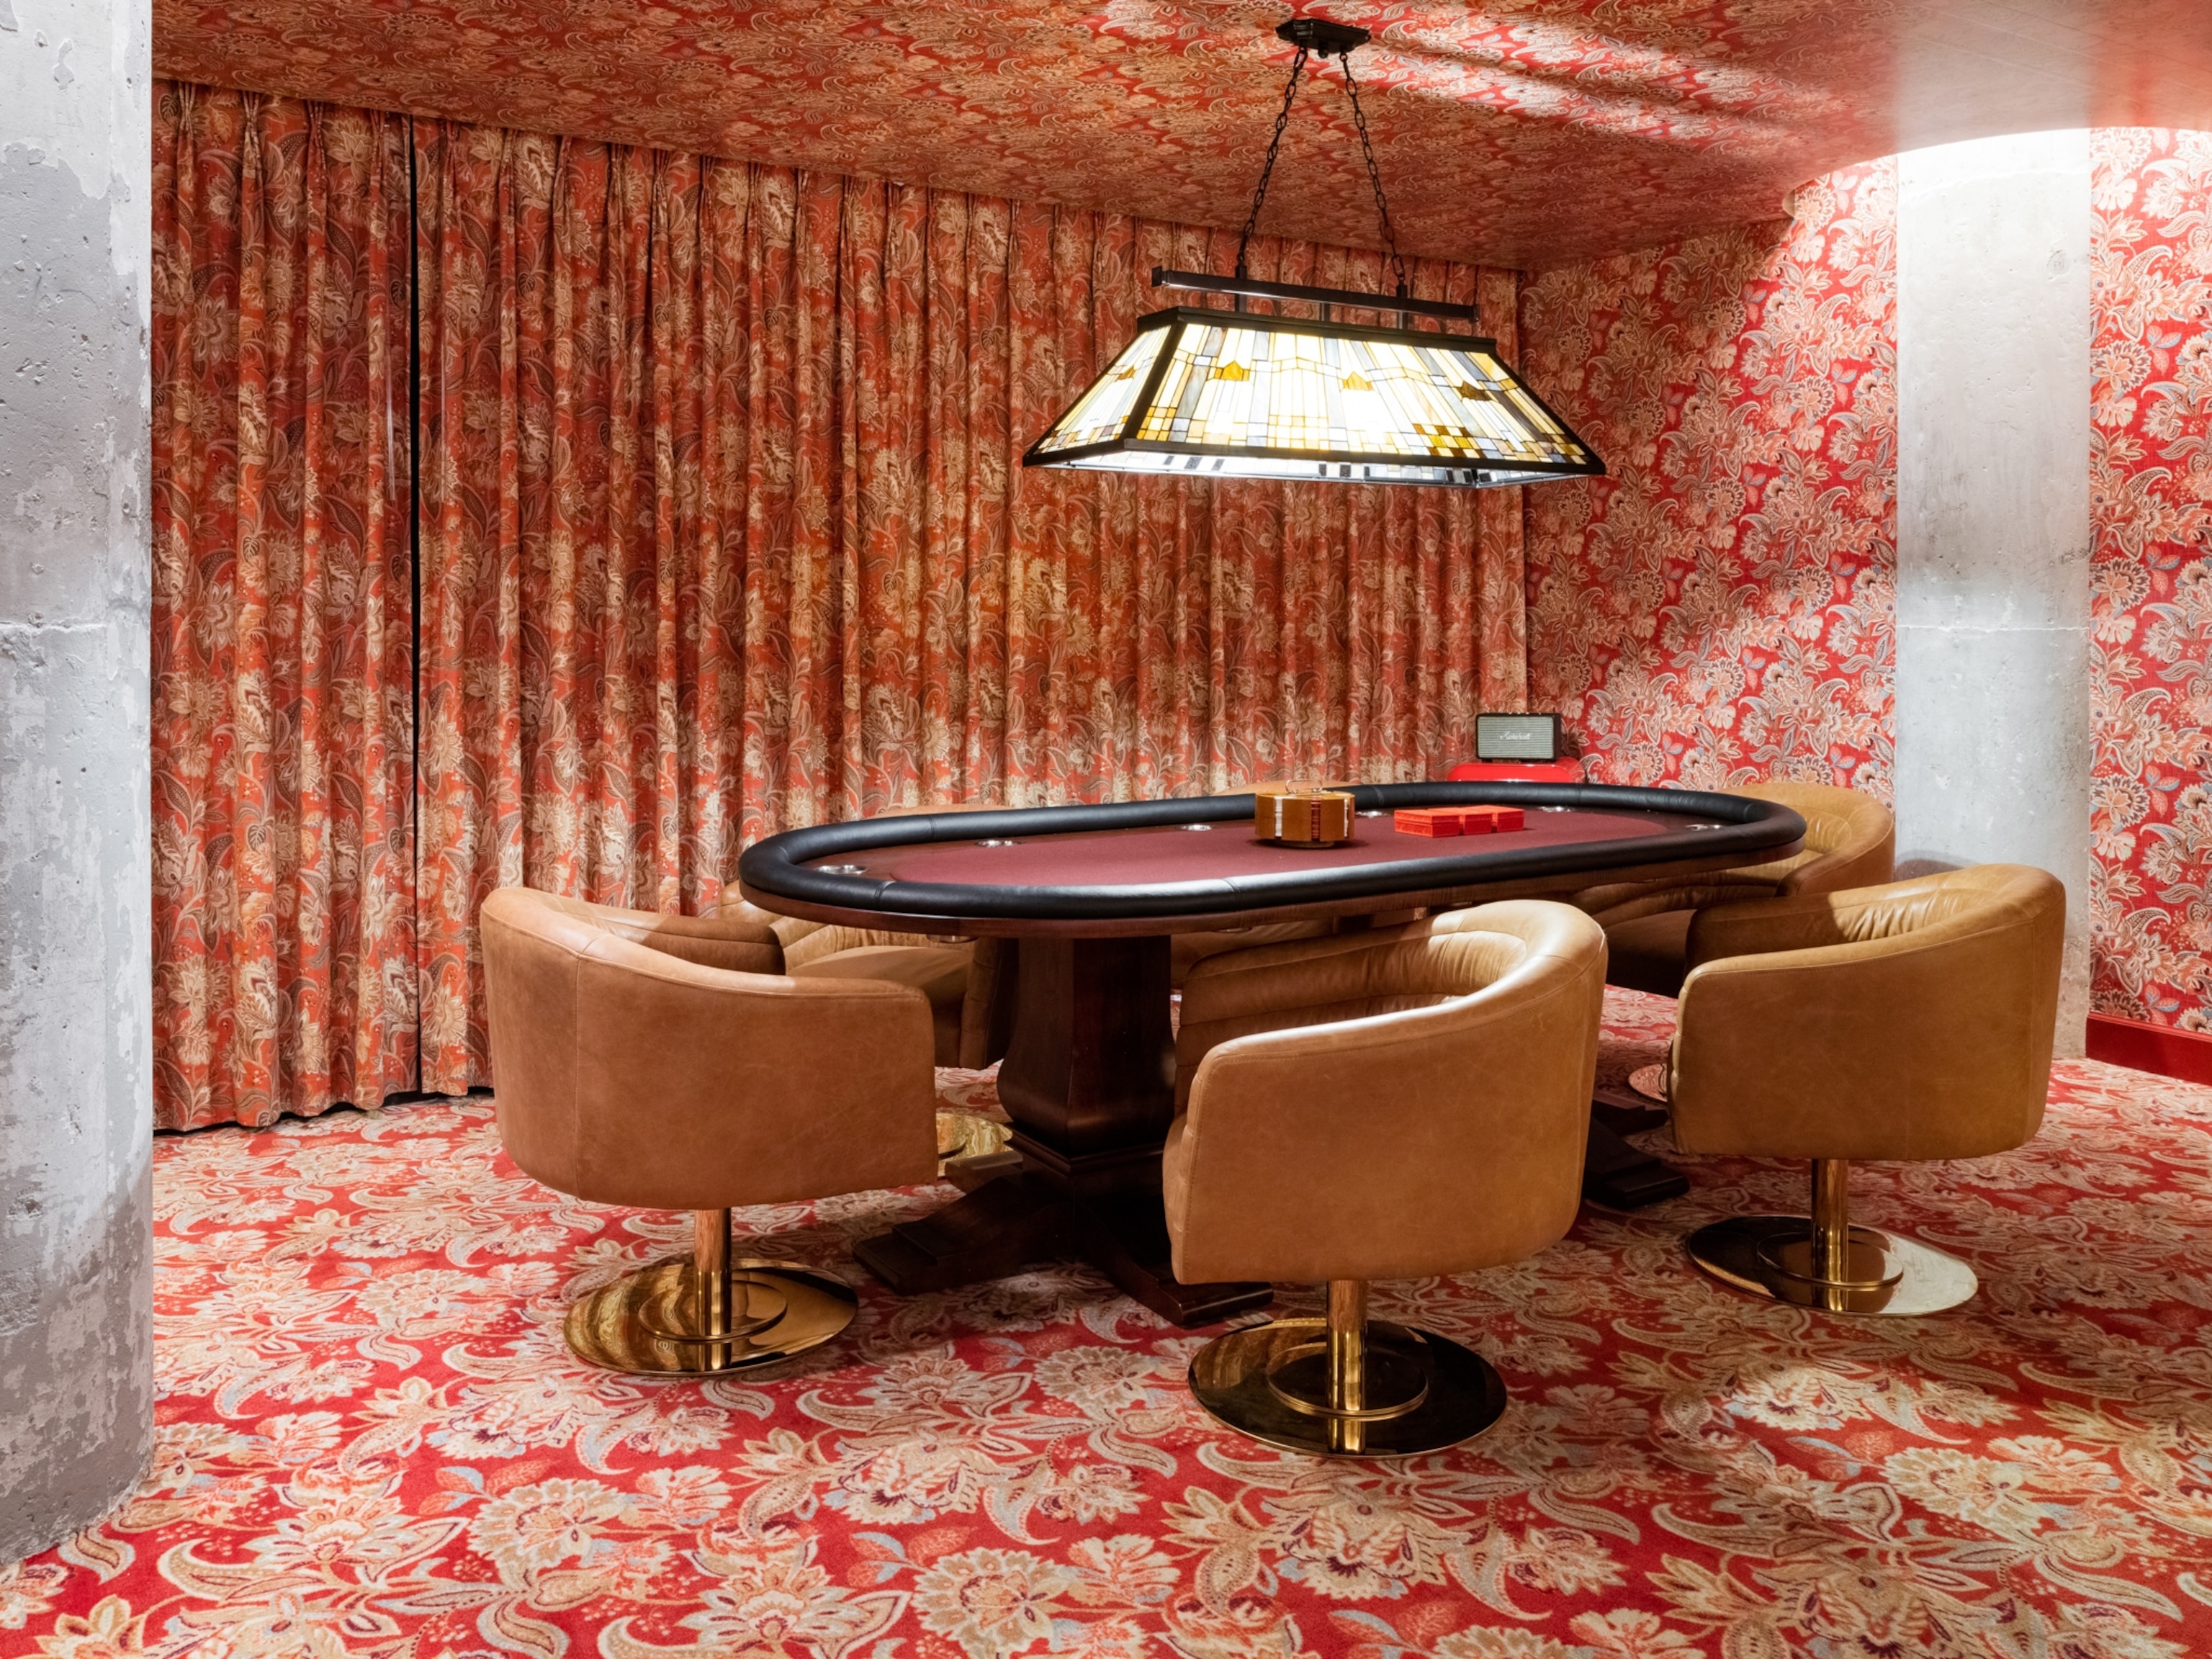 Długi, drewniany stół do pokera w pokoju pełnym tapet w czerwone wzory.